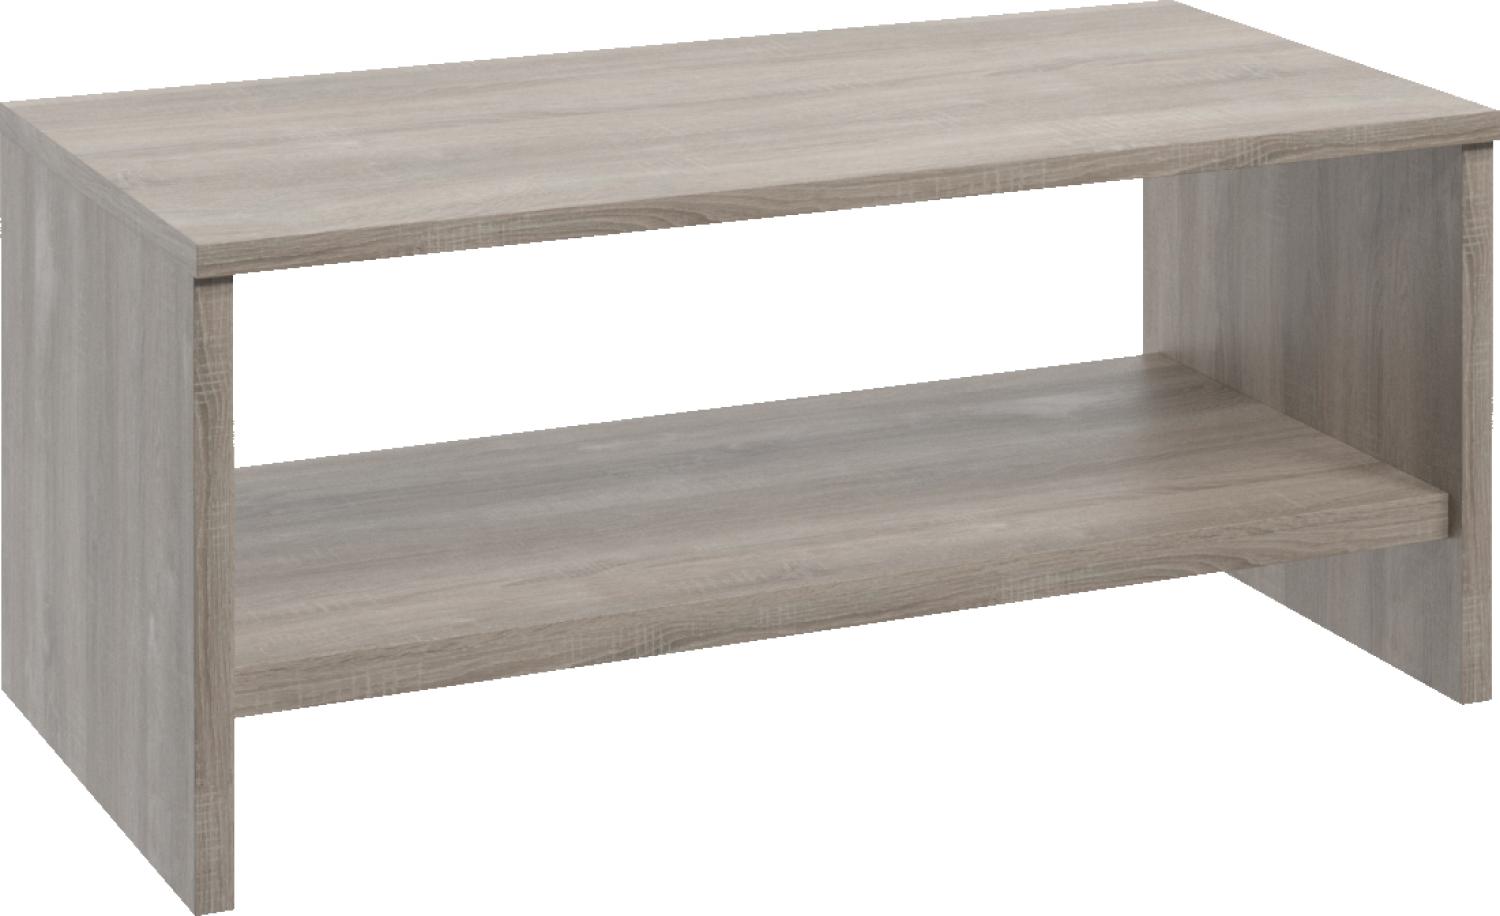 Tisch Beistell Tische Couch Klassisch xxl Neu Design Holz Couchtisch Glastisch Bild 1